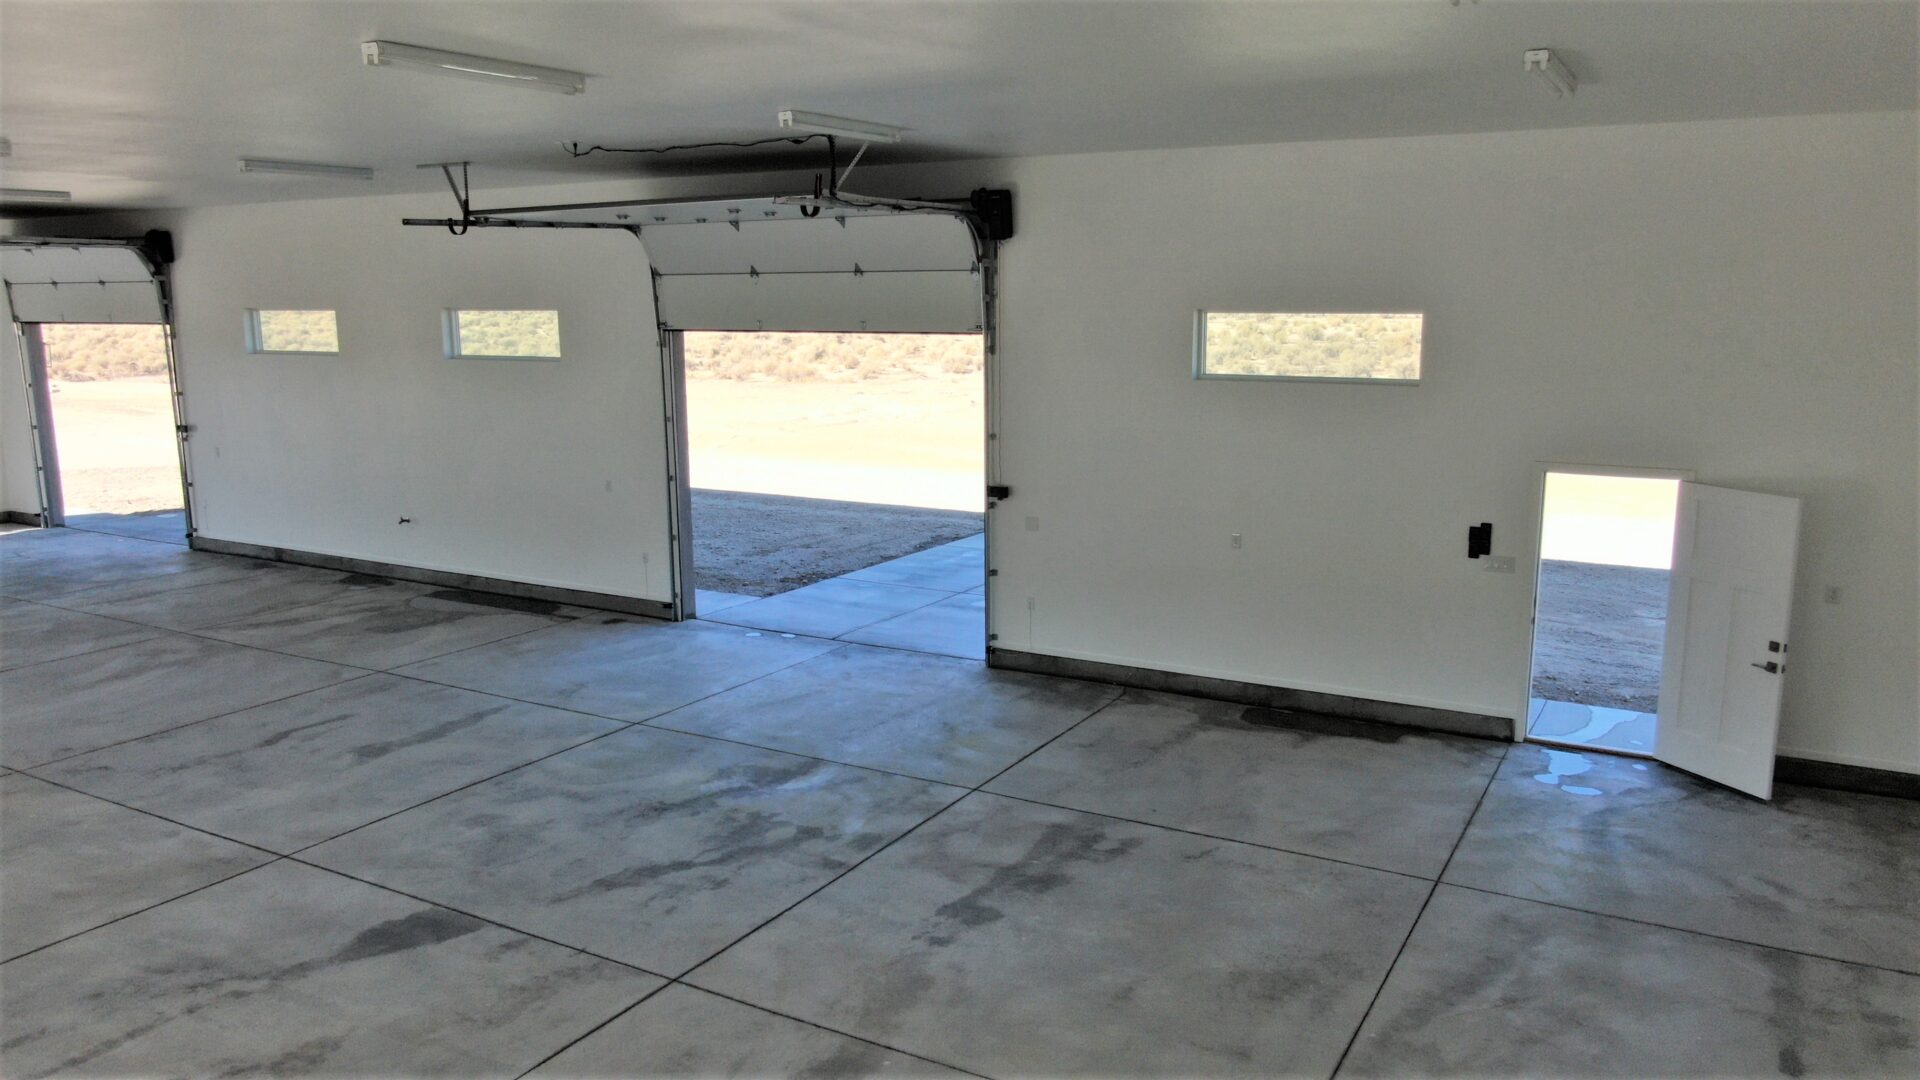 An empty space with garage doors and normals door